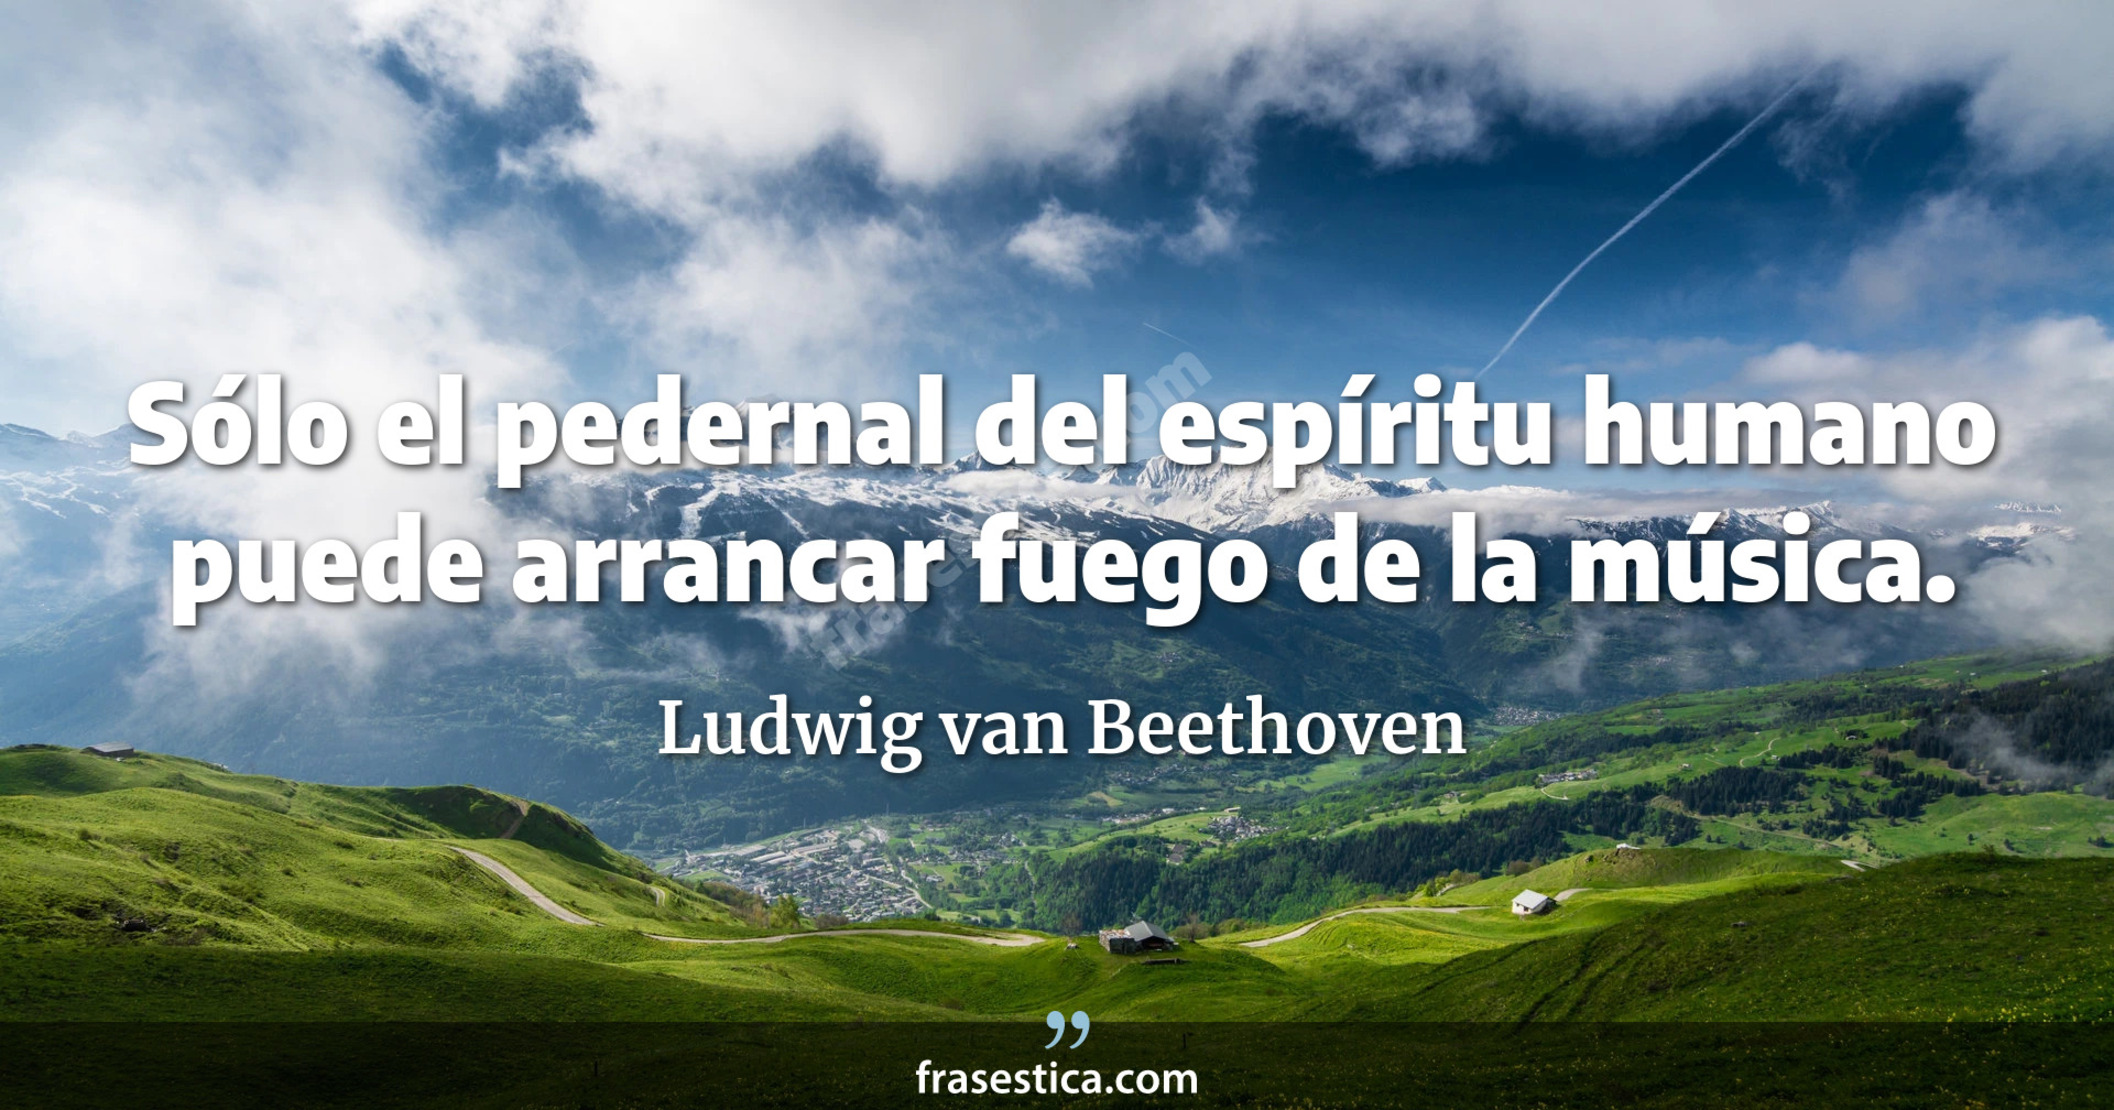 Sólo el pedernal del espíritu humano puede arrancar fuego de la música. - Ludwig van Beethoven